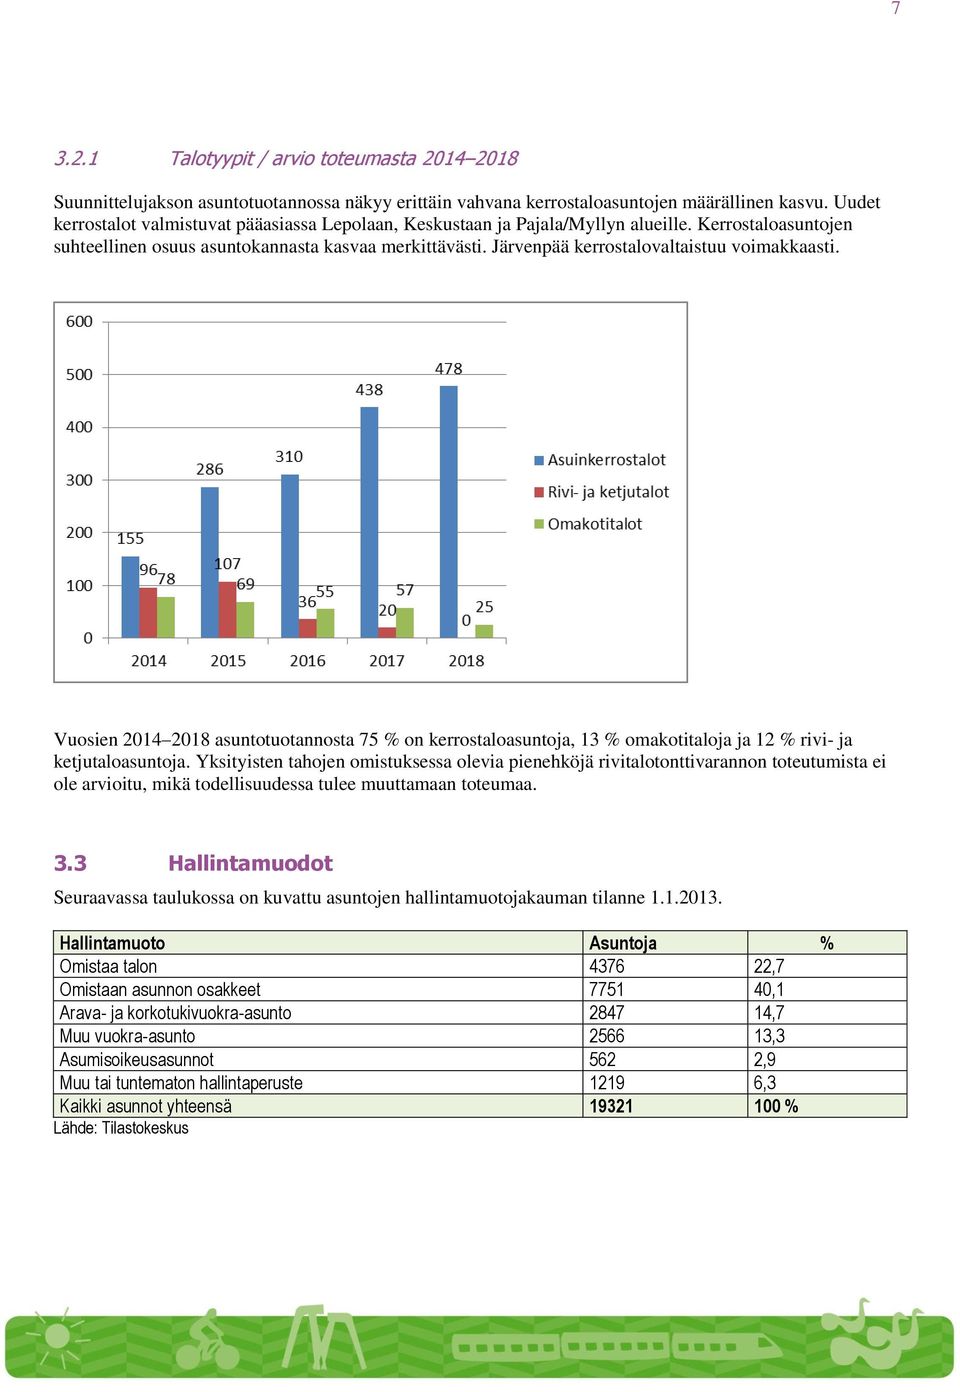 Järvenpää kerrostalovaltaistuu voimakkaasti. Vuosien 2014 2018 asuntotuotannosta 75 % on kerrostaloasuntoja, 13 % omakotitaloja ja 12 % rivi- ja ketjutaloasuntoja.